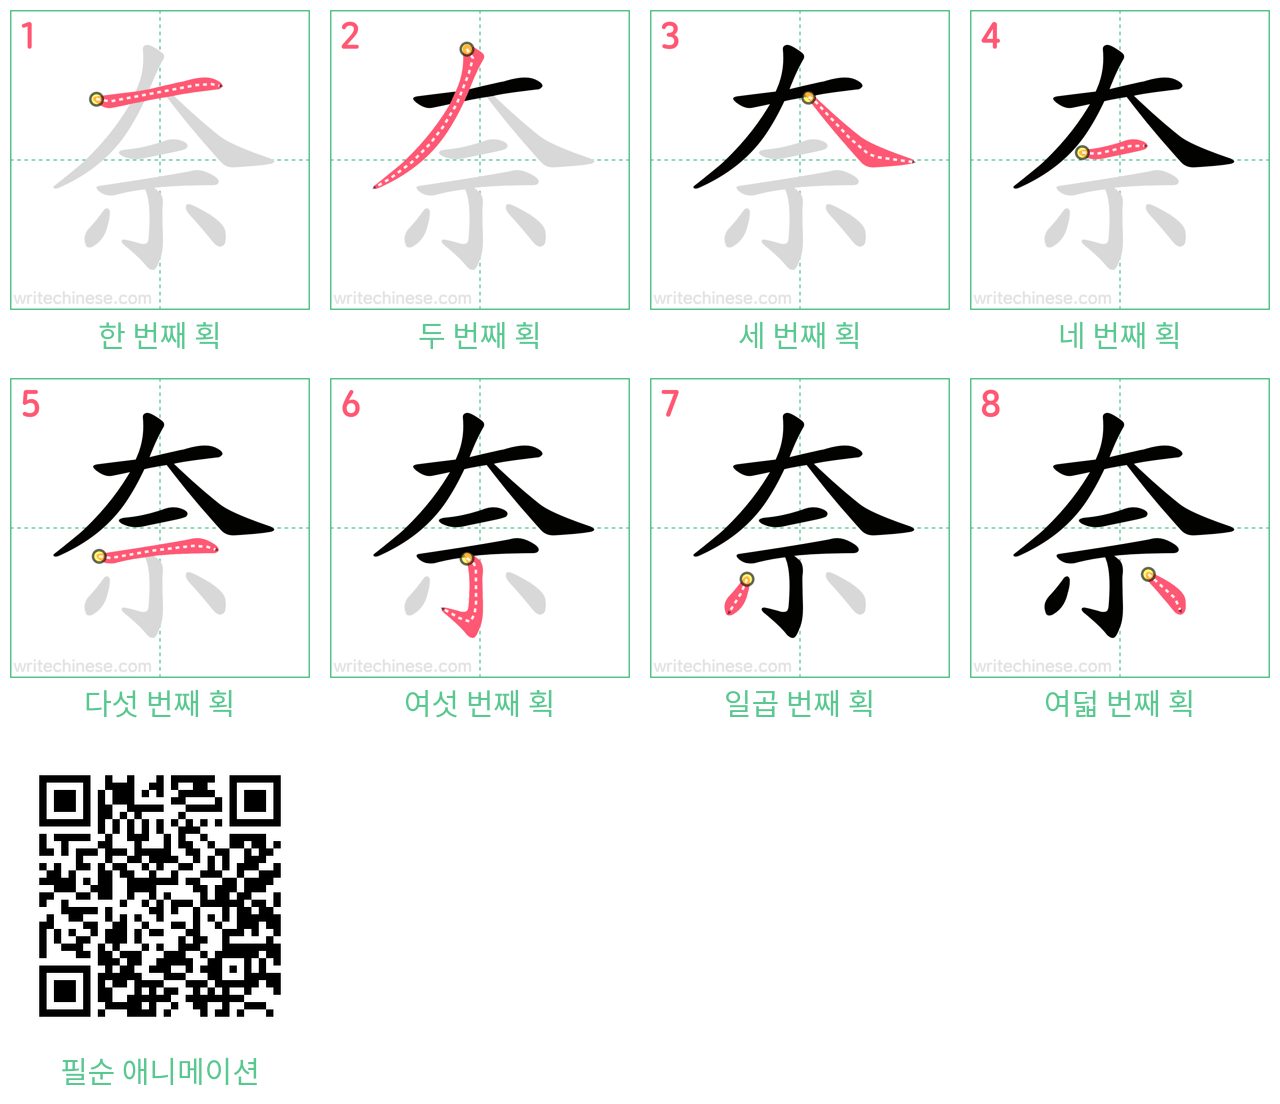 奈 step-by-step stroke order diagrams